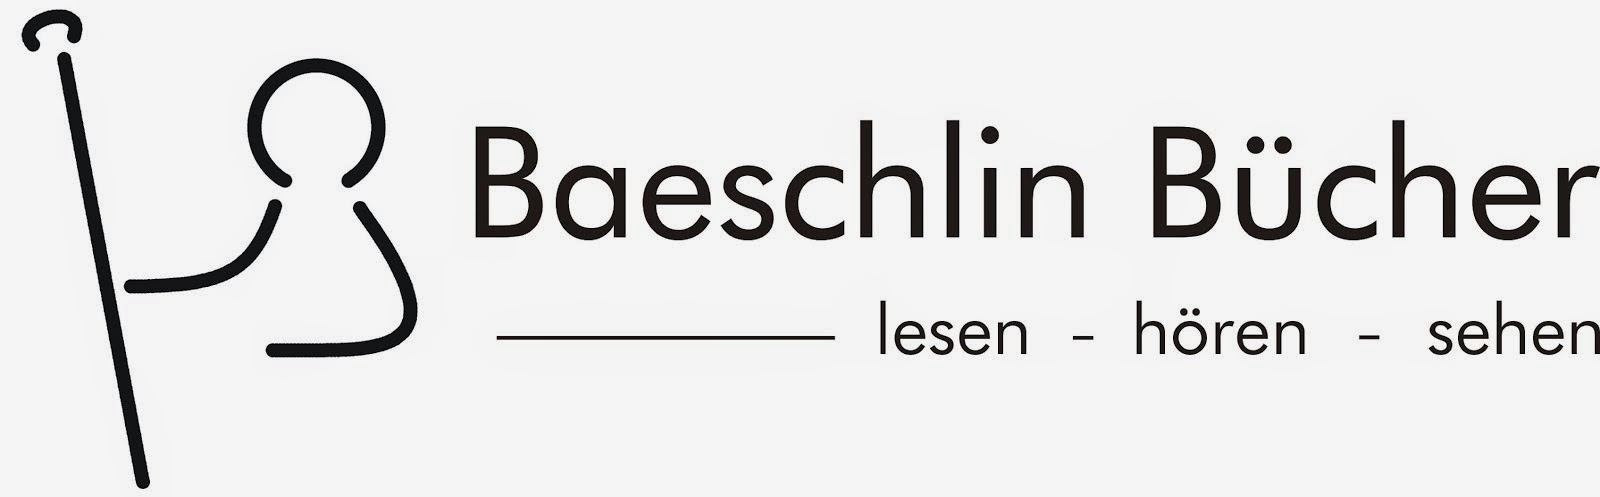 Baeschlin